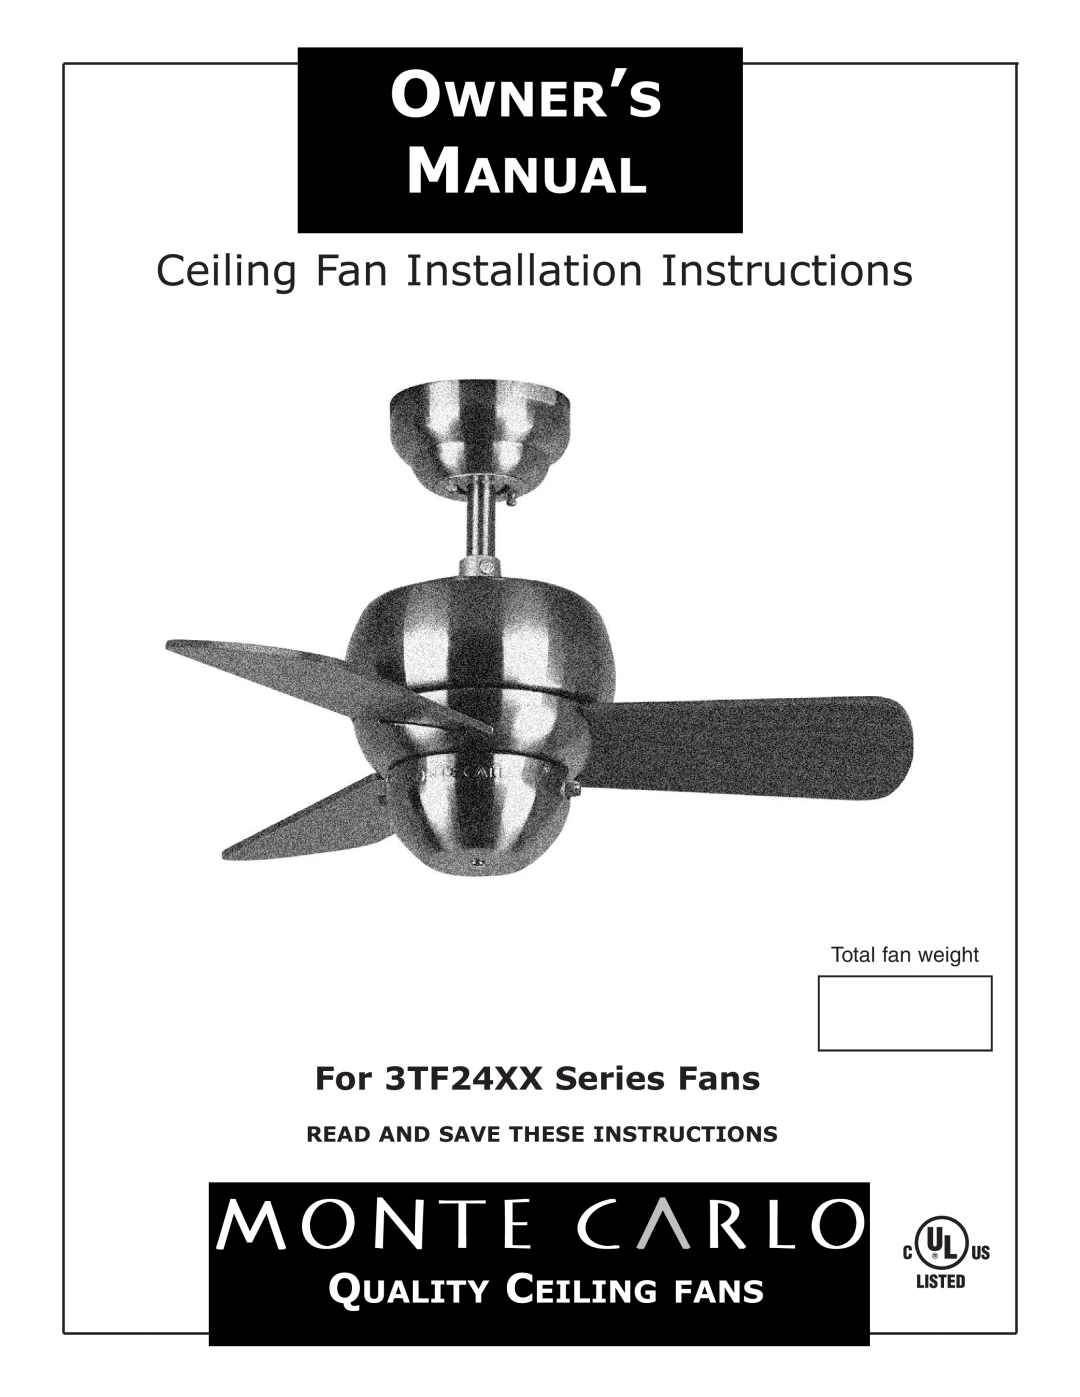 Monte Carlo Fan Company installation instructions Ceiling Fan Installation Instructions, For 3TF24XX Series Fans 